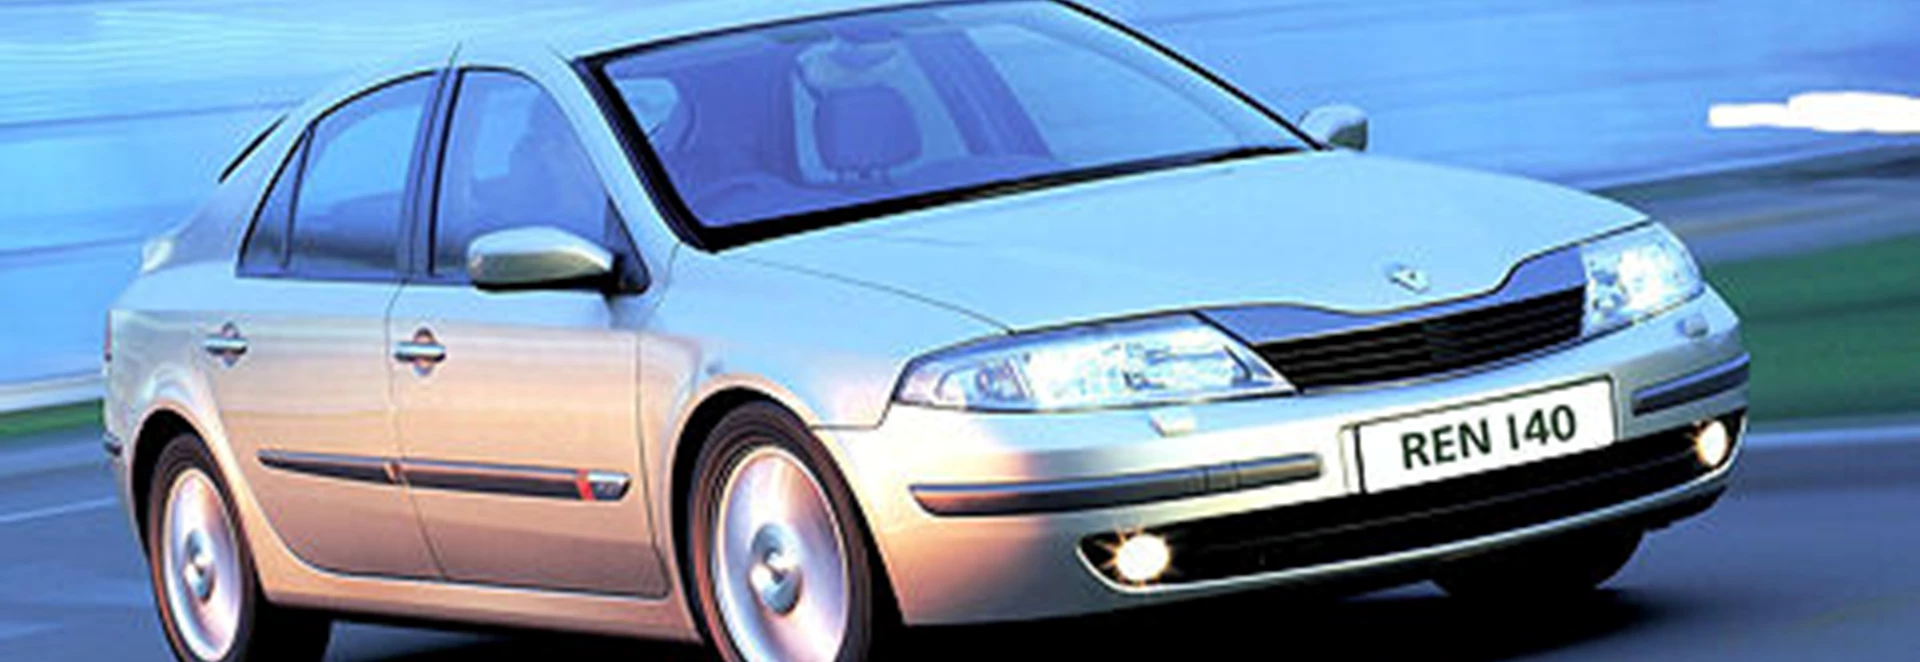 Renault Laguna Hatchback 1.9 dCi Dynamique  